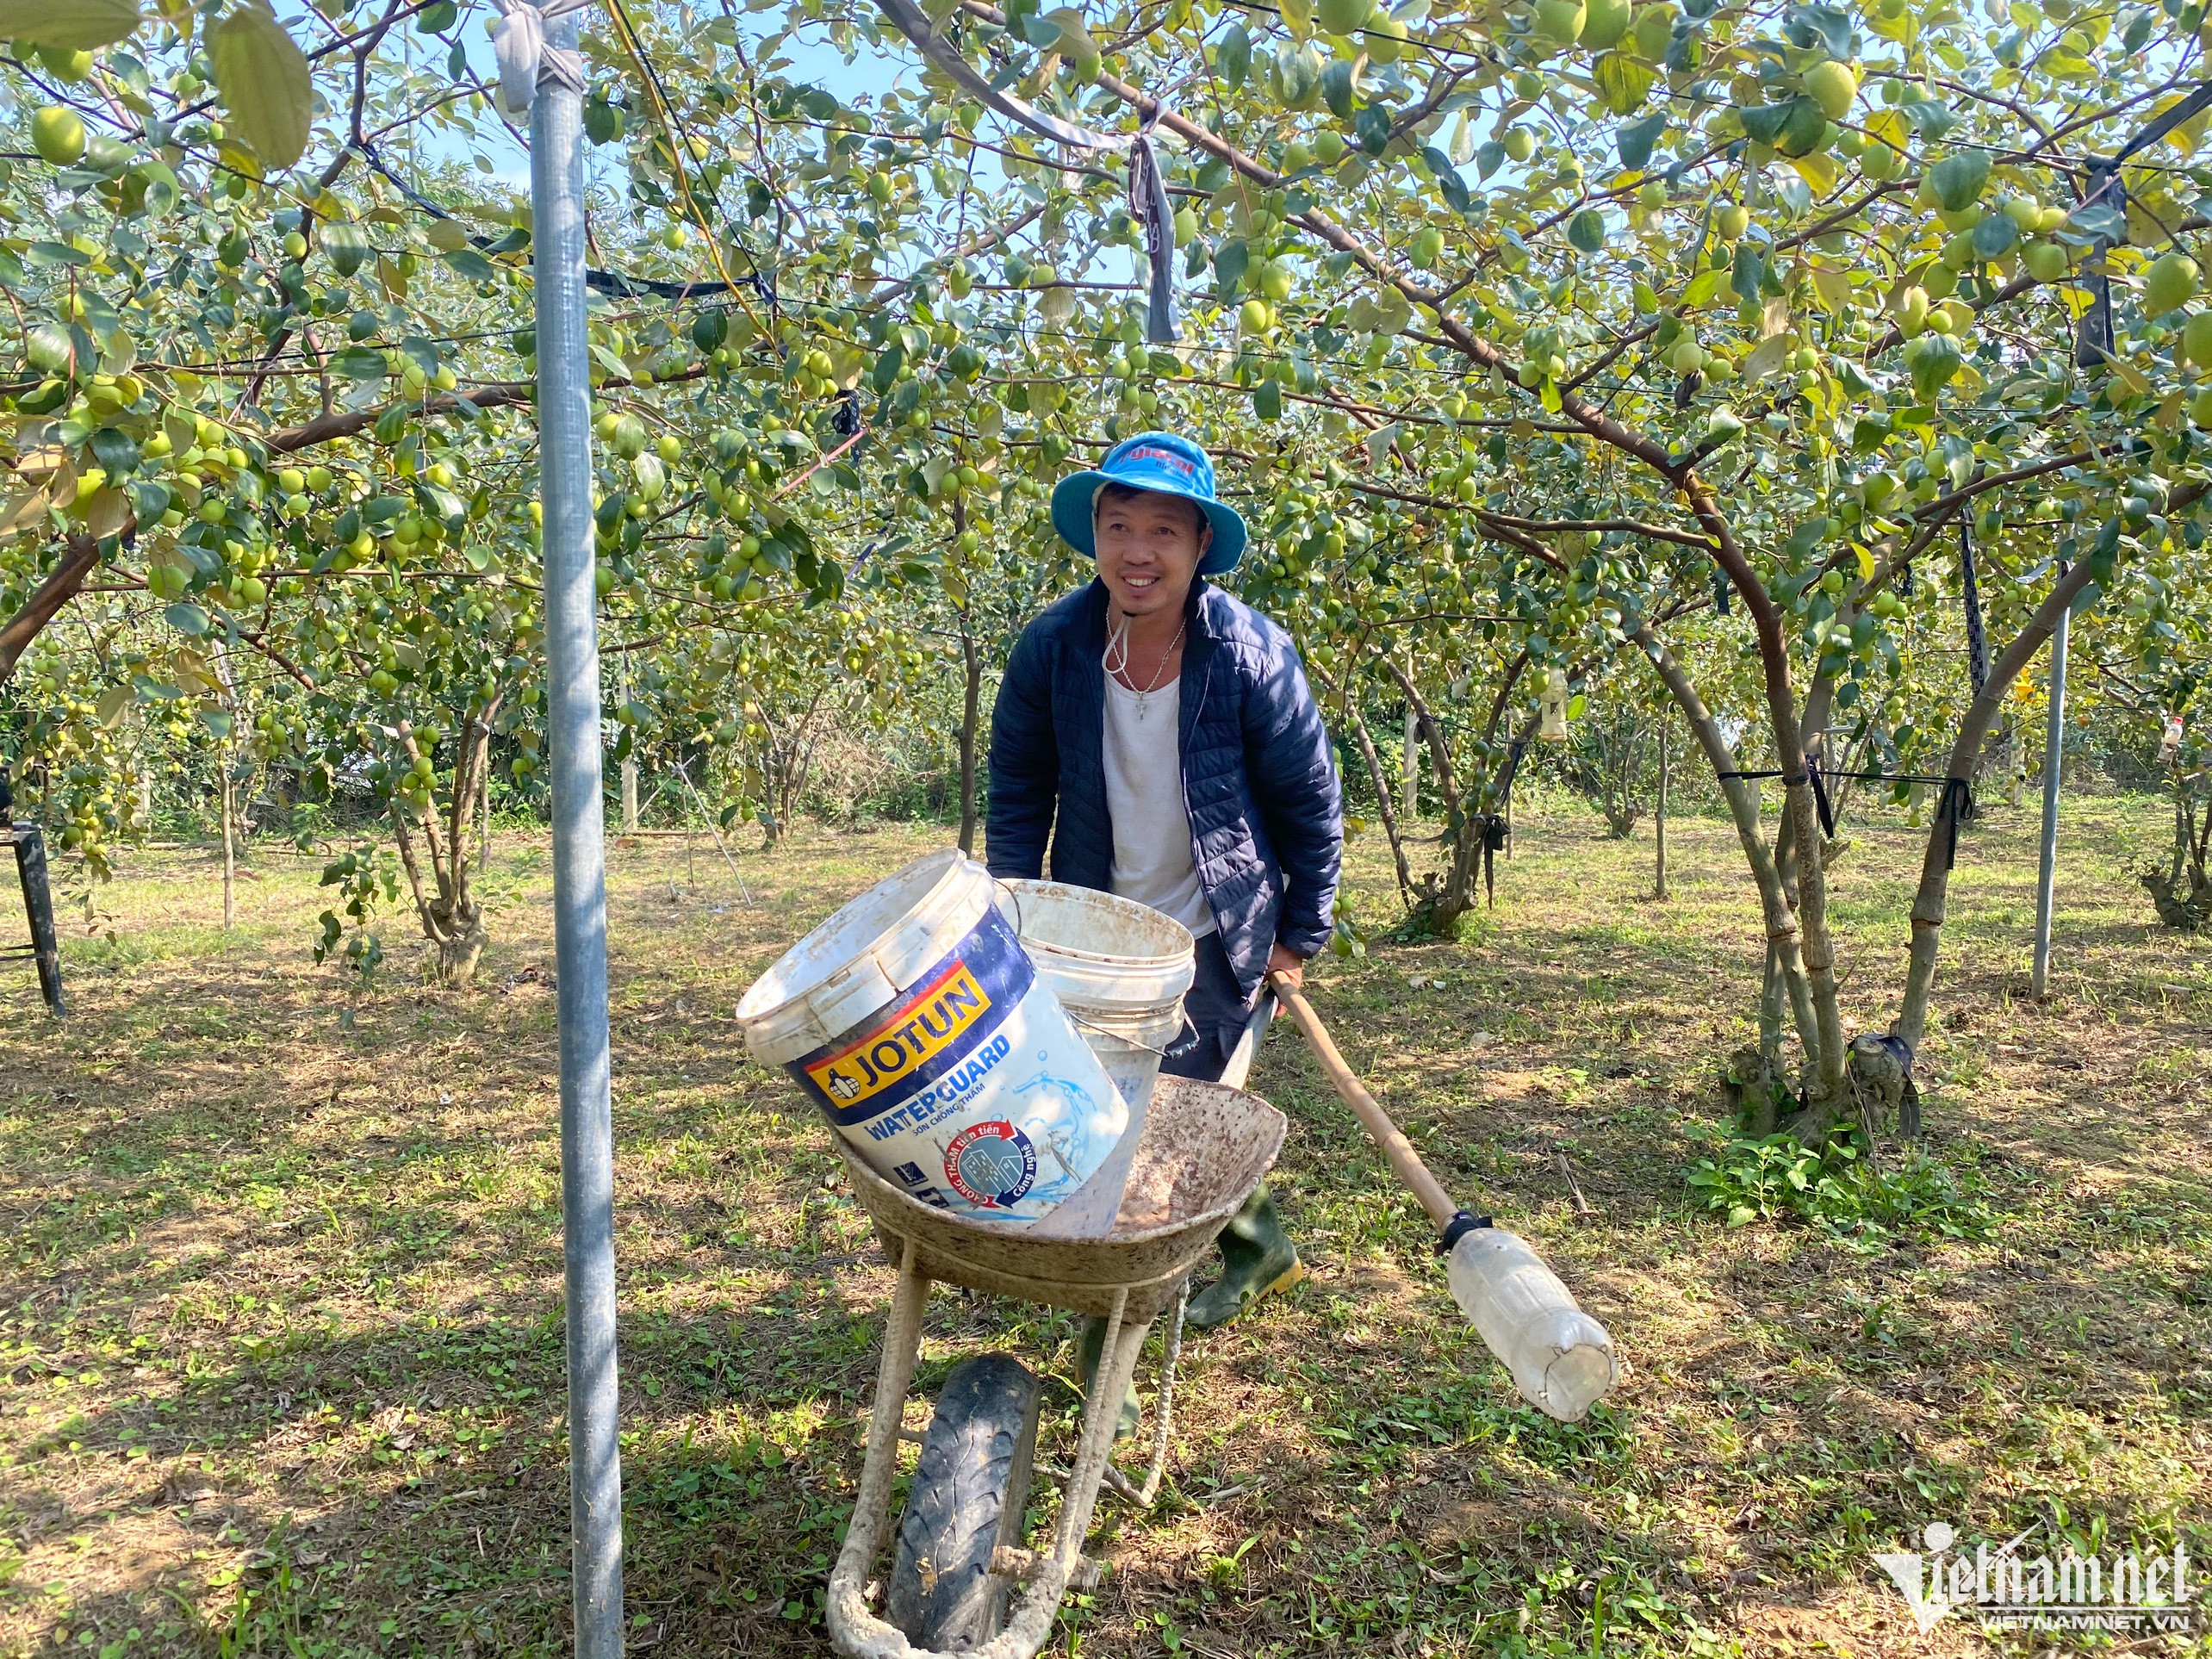 Liều trồng 300 gốc táo ở vùng ‘đất chết’, thu cả trăm triệu đồng-6